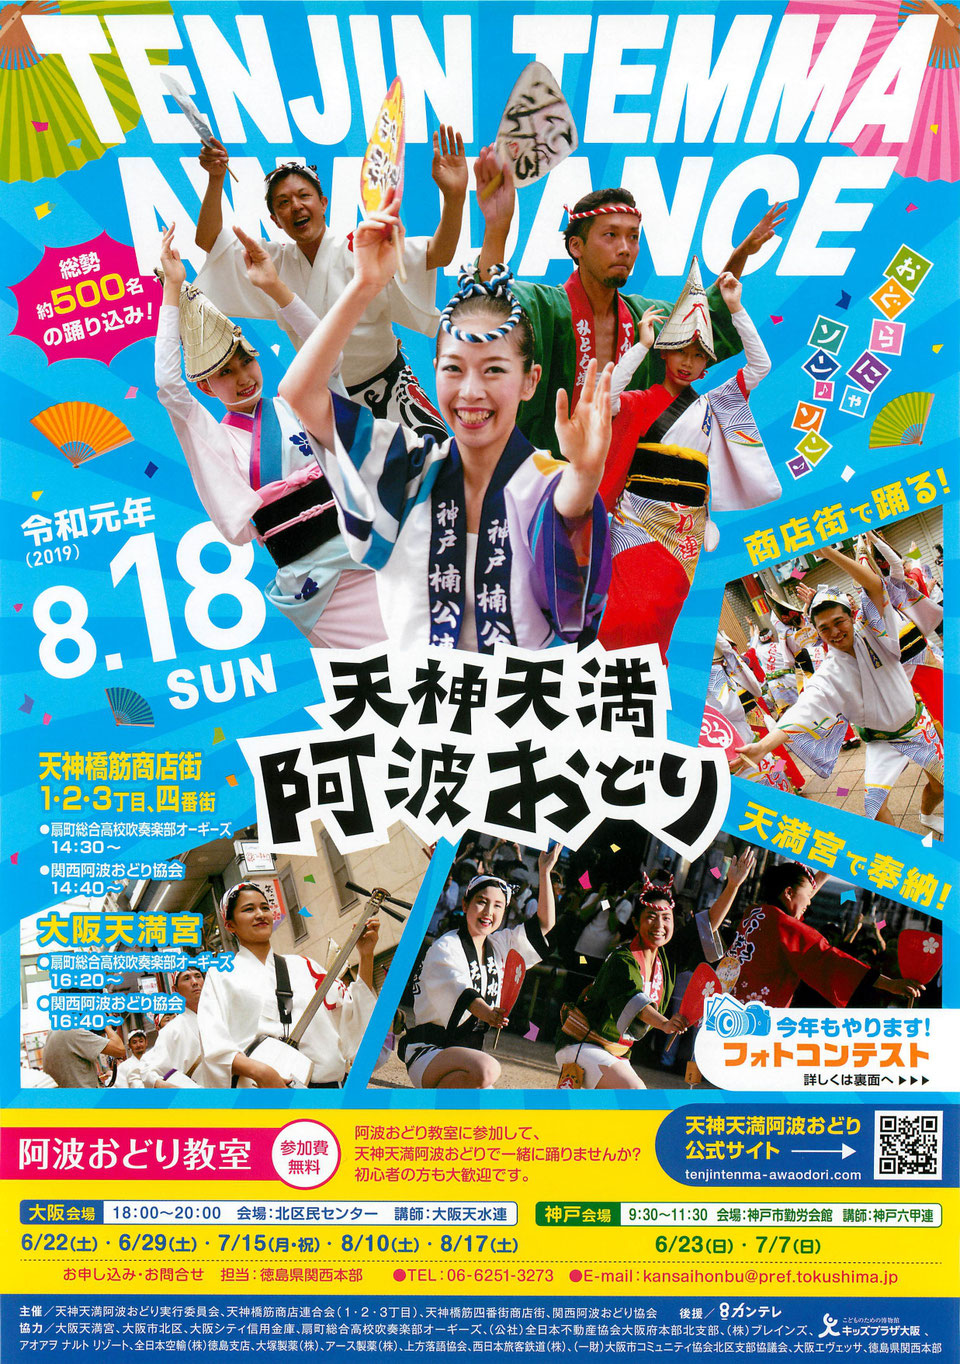 MITSUWAYA Staff Mako's Recommendation Osaka Event "TENJINTEMMA AWAODORI!"